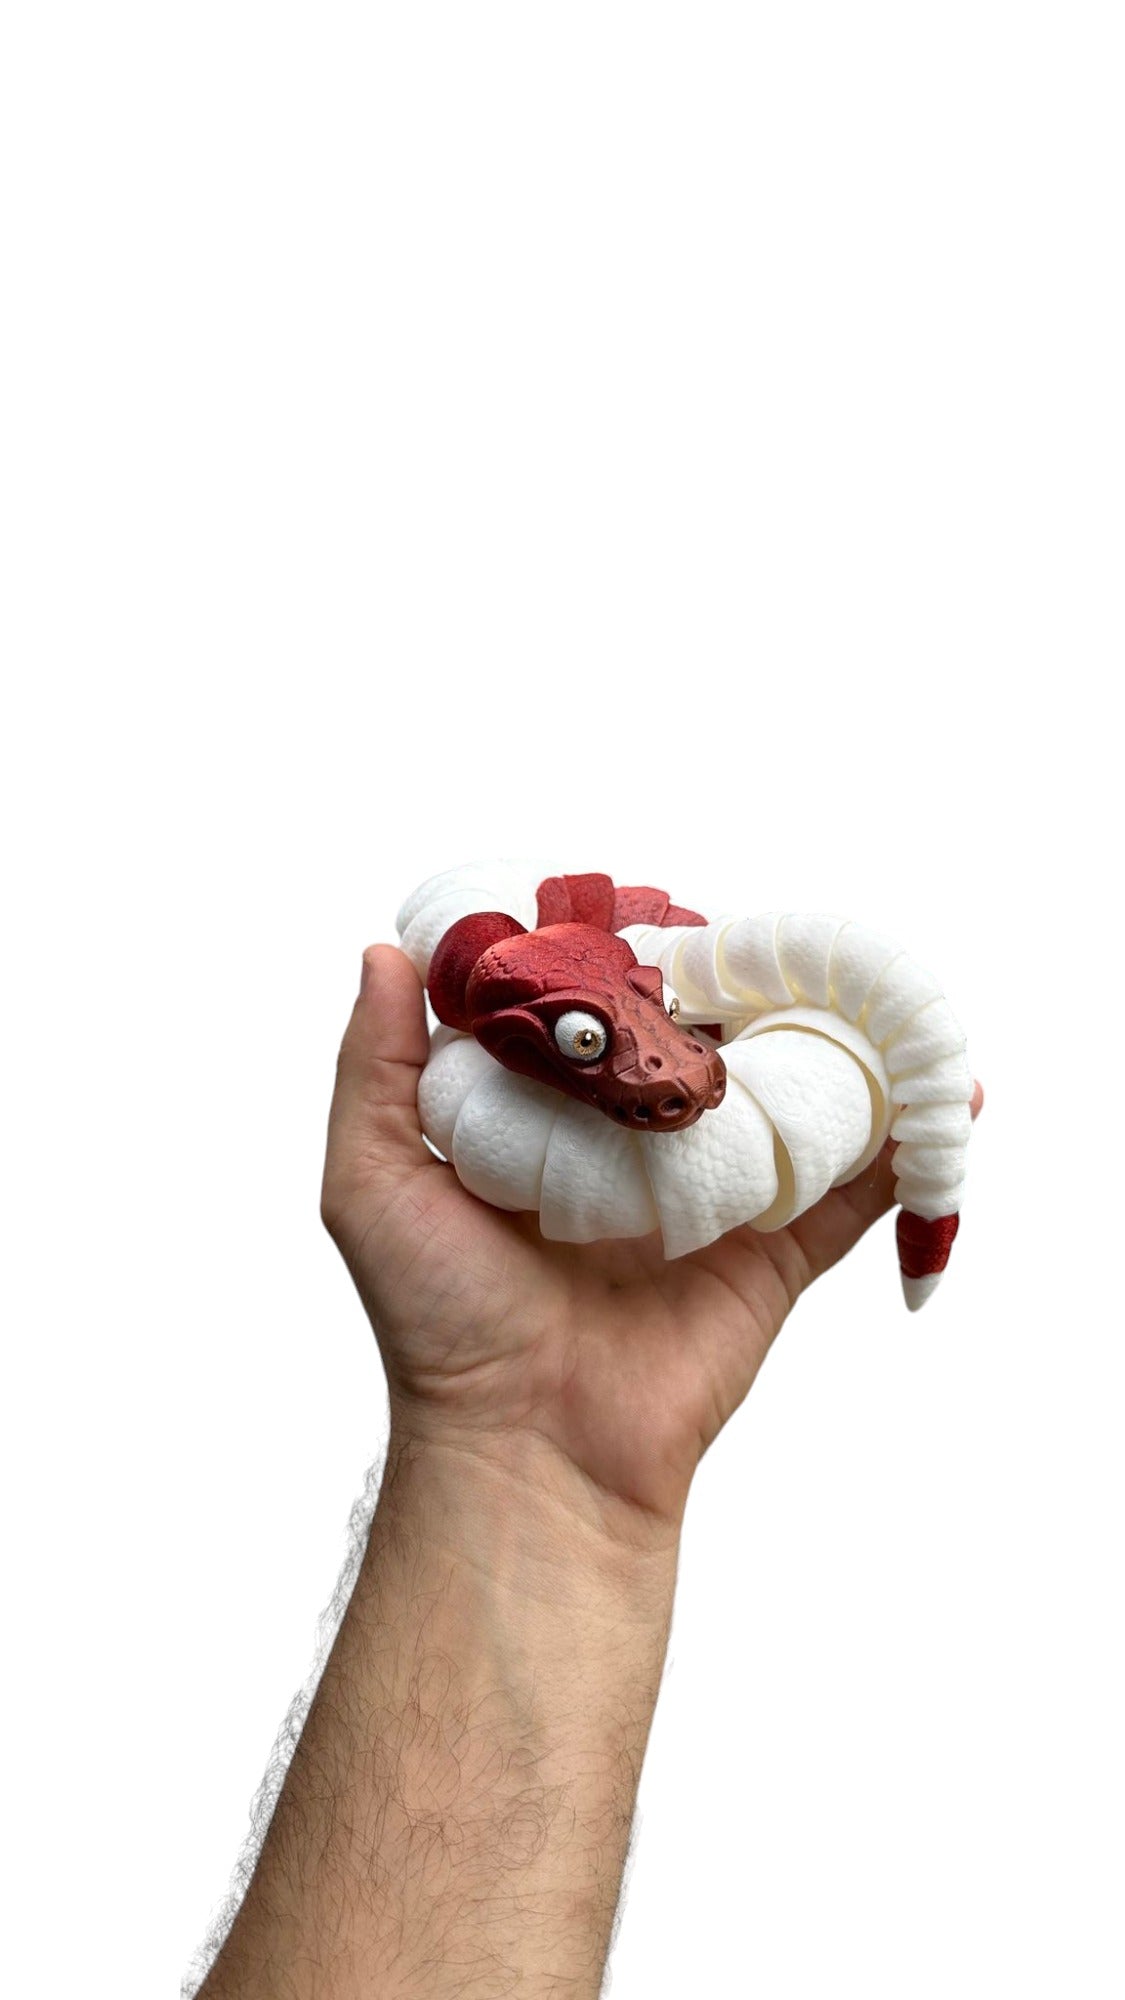 3D Printed Ball Python